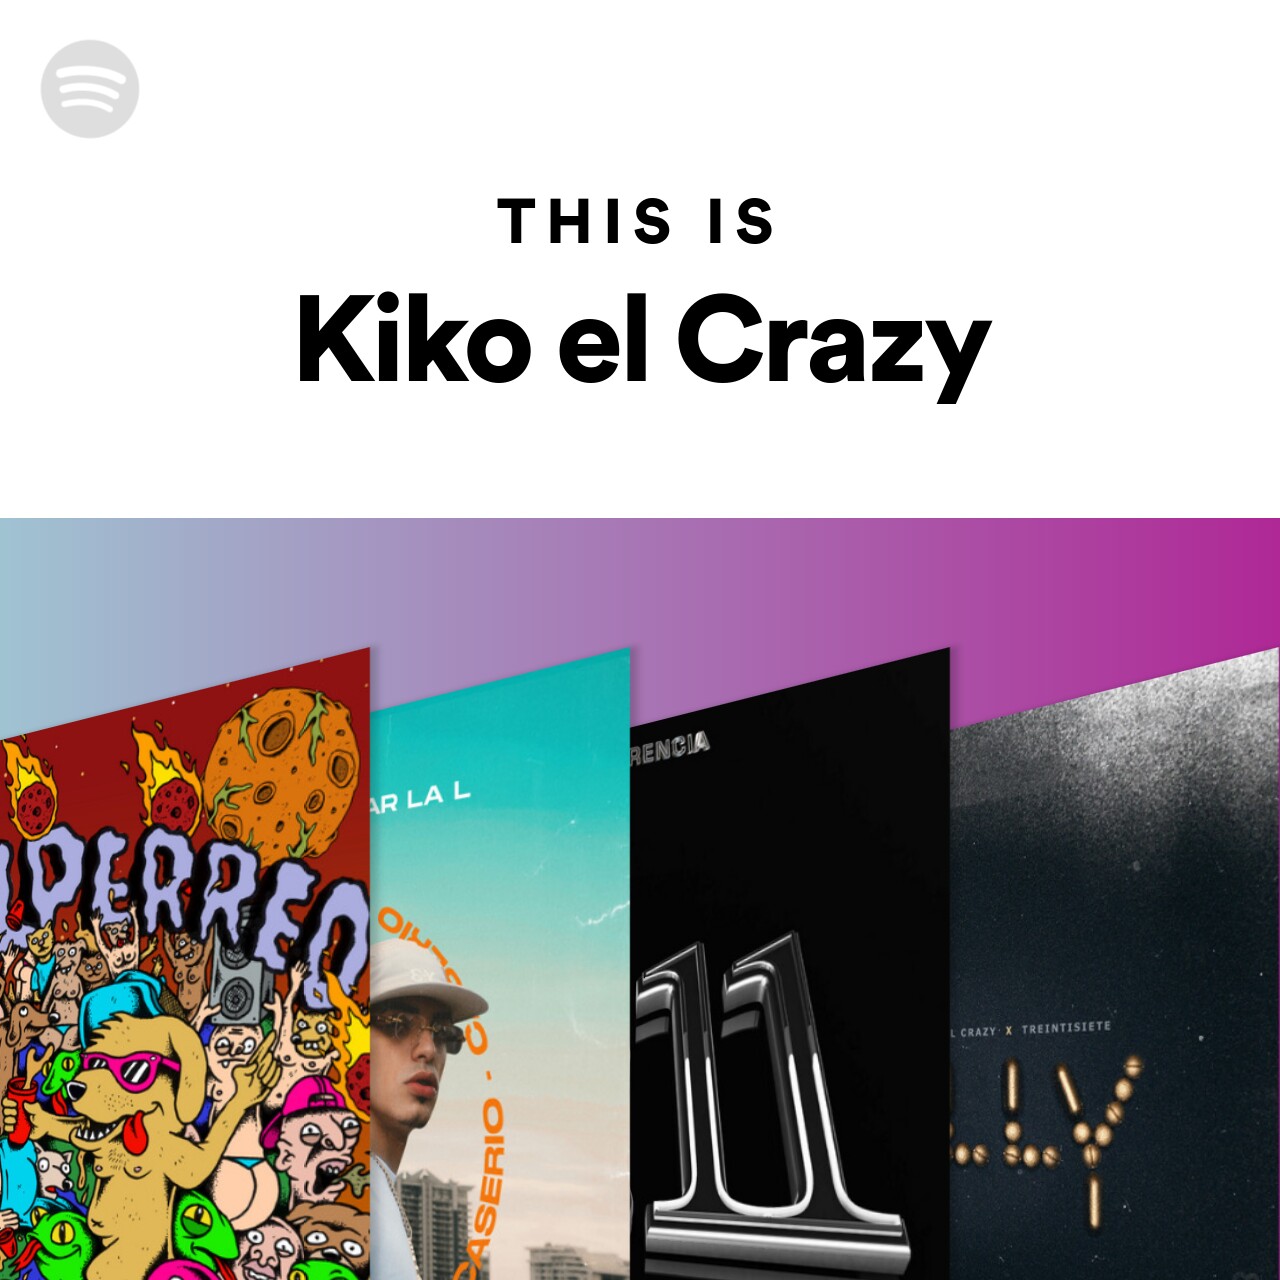 This Is Kiko el Crazy | Spotify Playlist